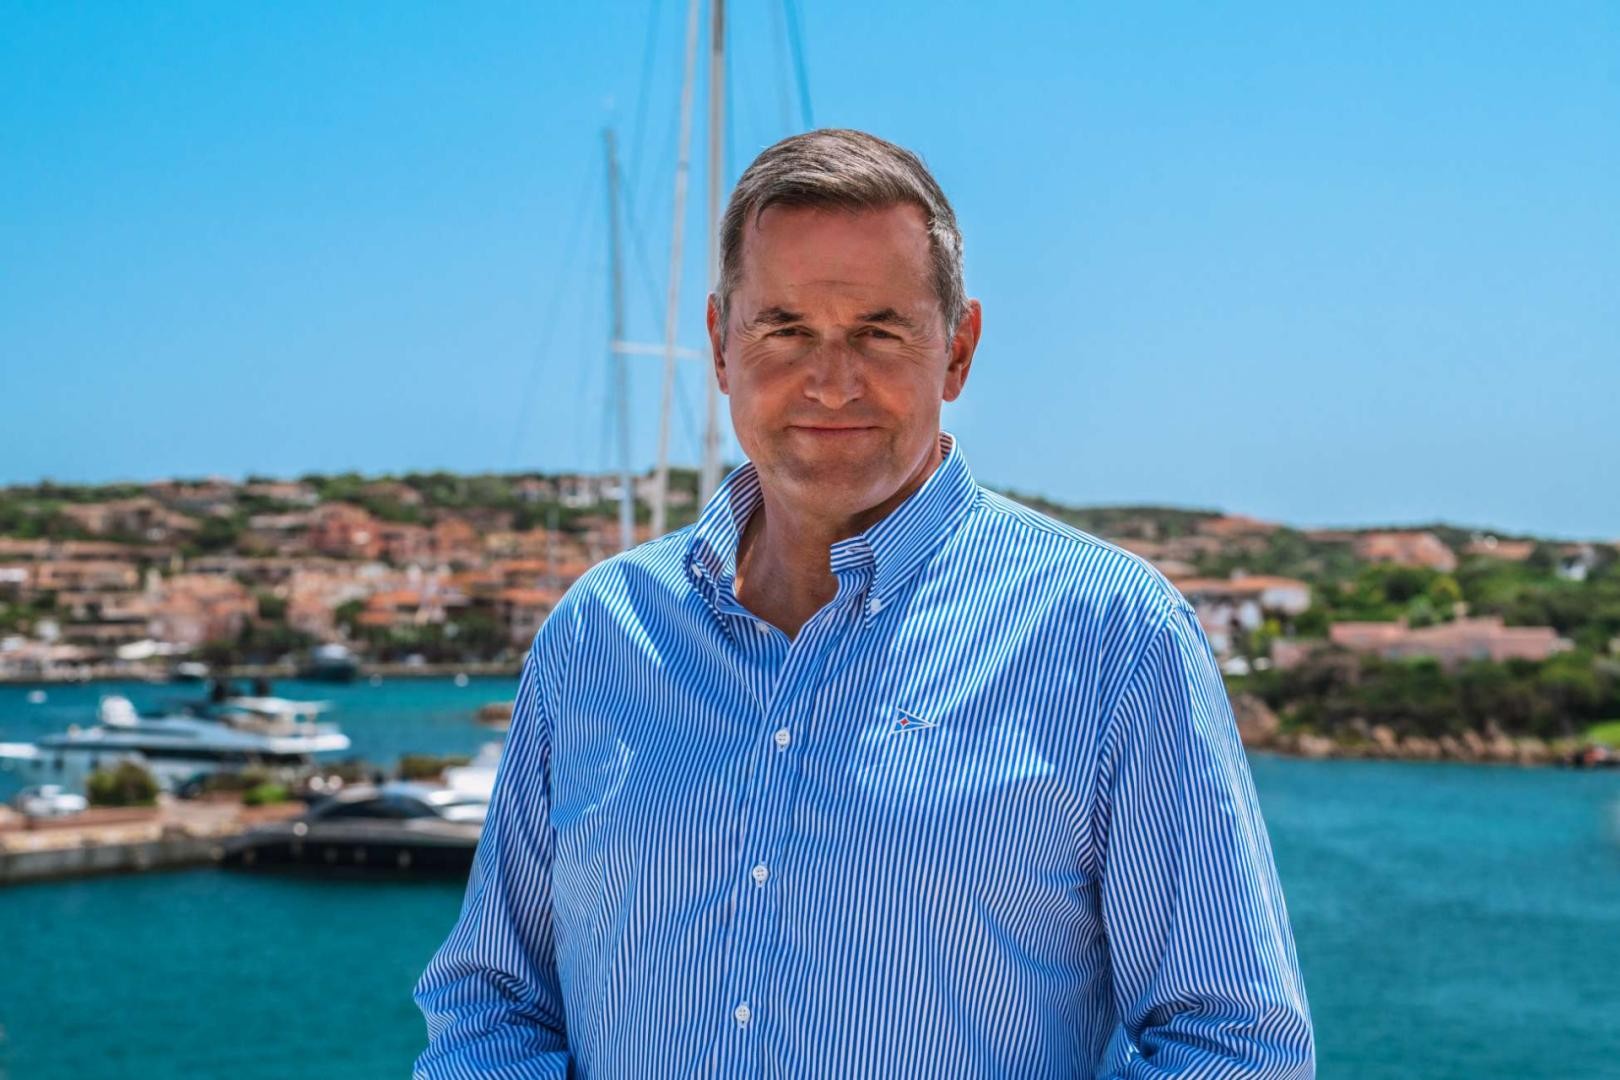 Michael Illbruck è il nuovo Commodoro dello Yacht Club Costa Smeralda